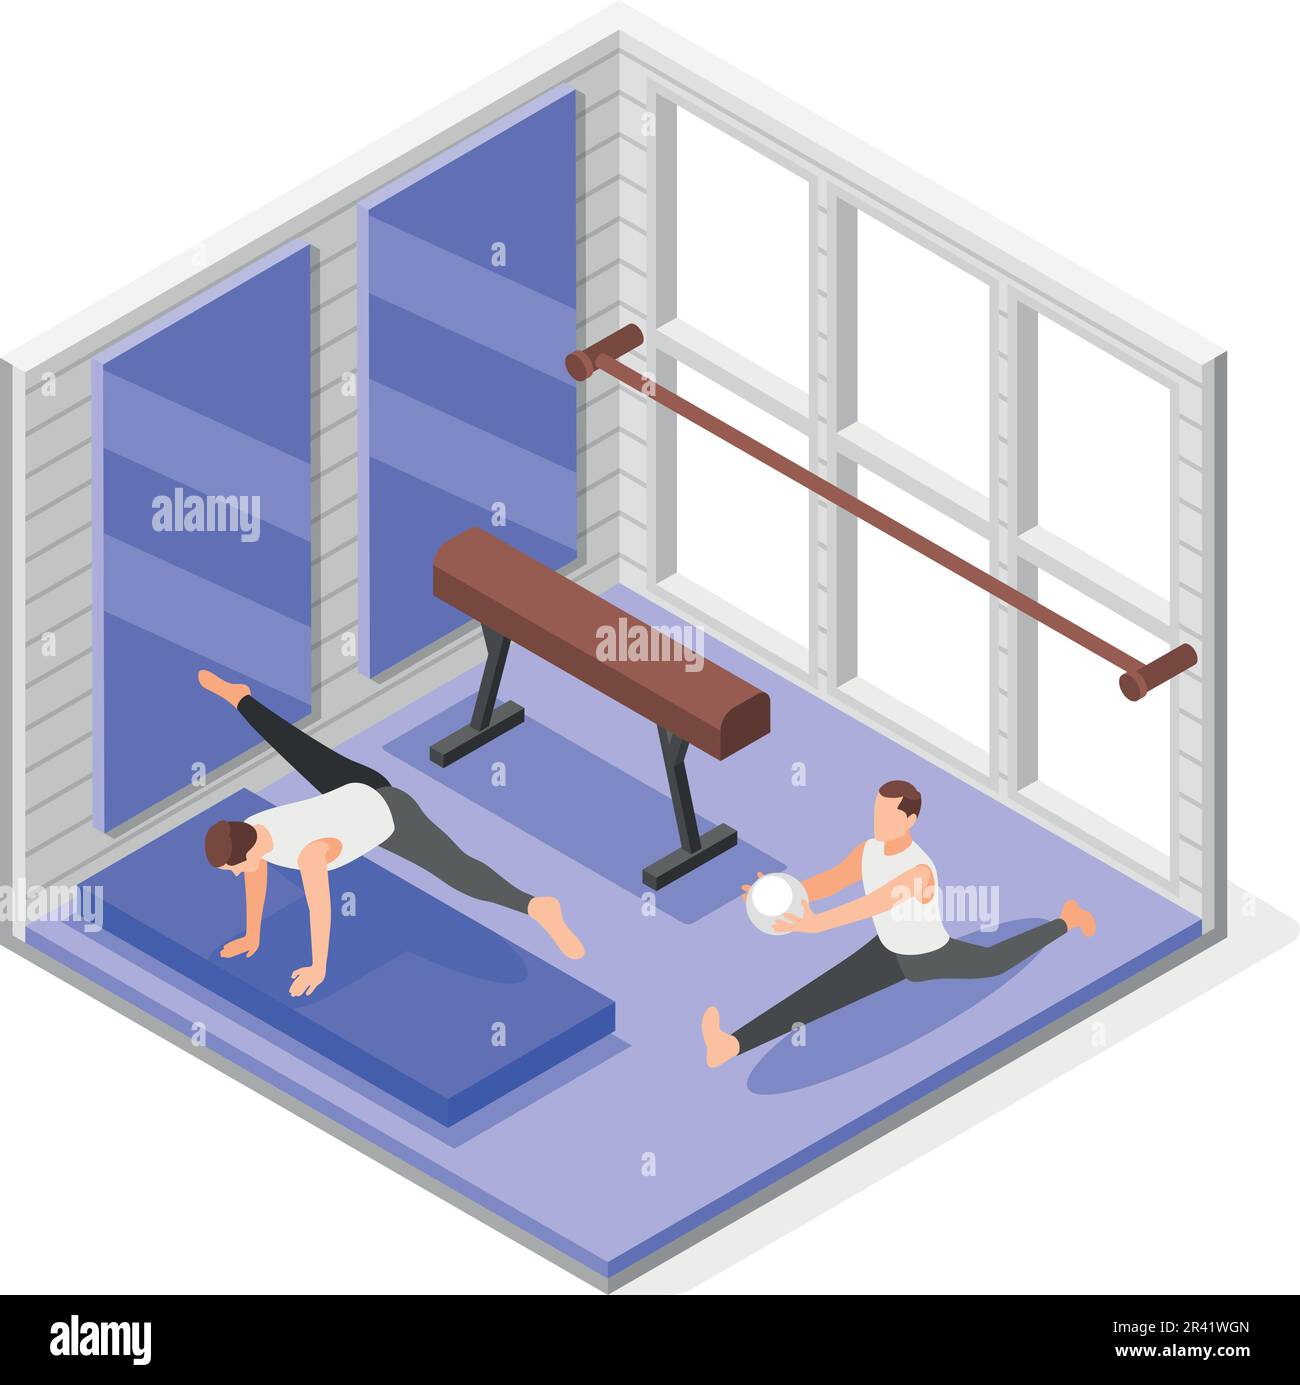 Gymnastik-isometrische Zusammensetzung mit Innenansicht des Fitnessraums mit zwei Übungssportlern und Gymnastikapparat-Vektordarstellung Stock Vektor